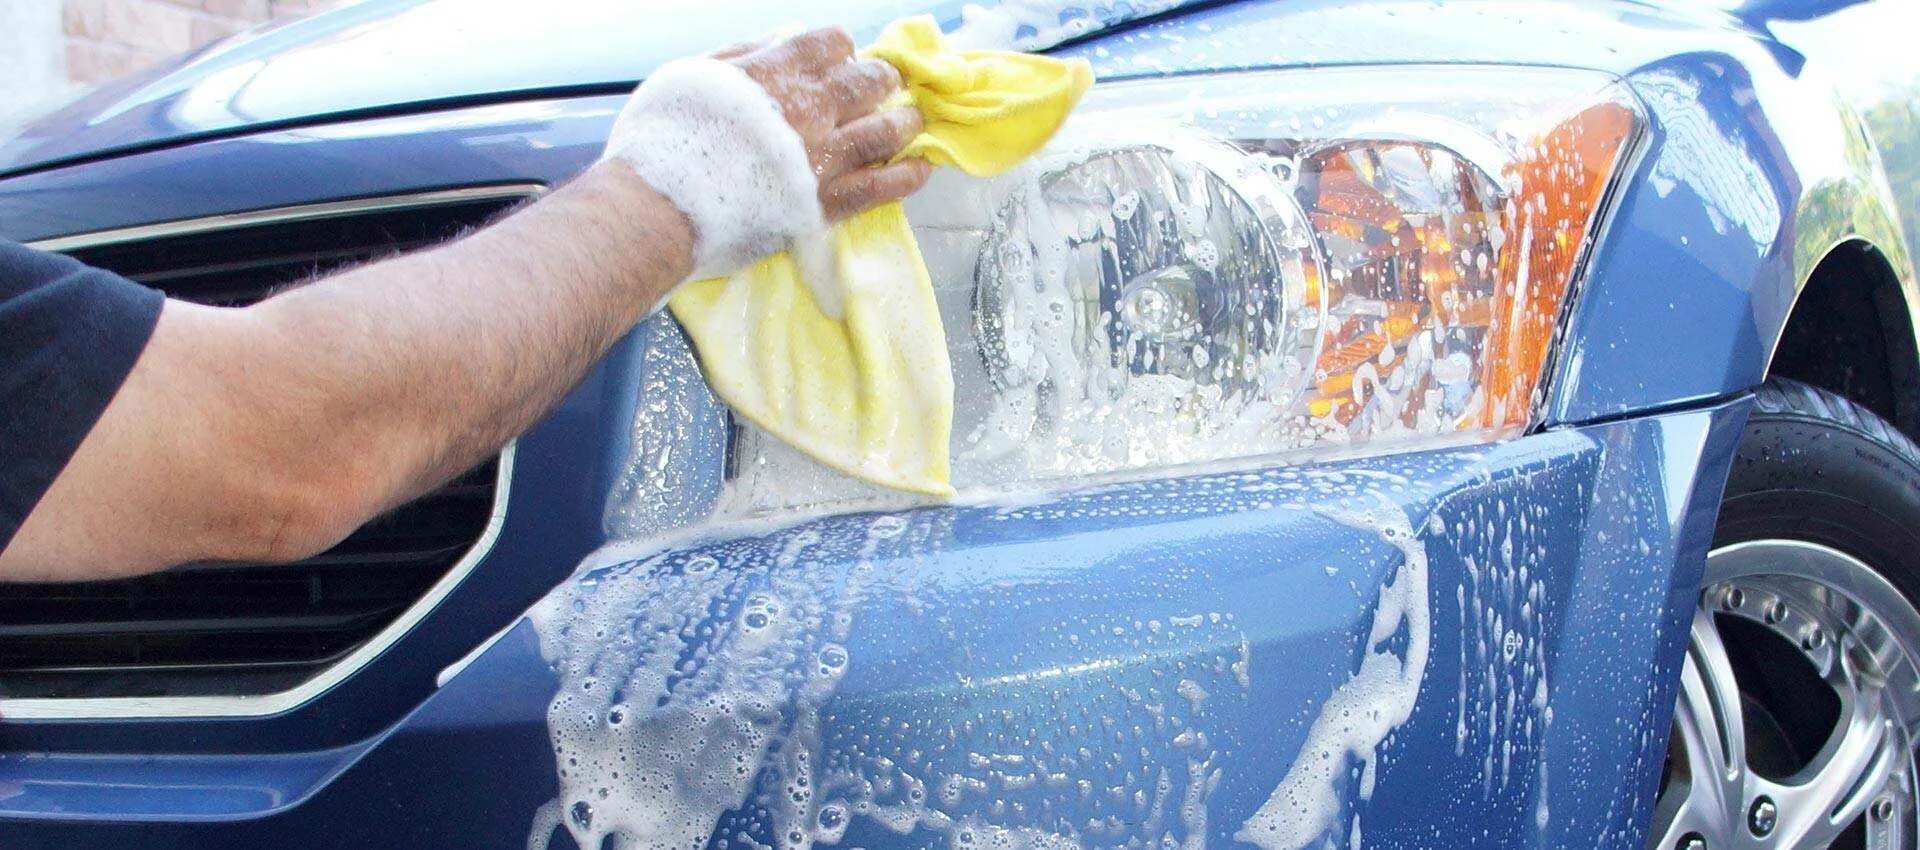 Car Wash автомойка. Губка для мойки автомобиля. Мытье автомобиля. Самостоятельная мойка автомобиля. Почему машину моют снизу